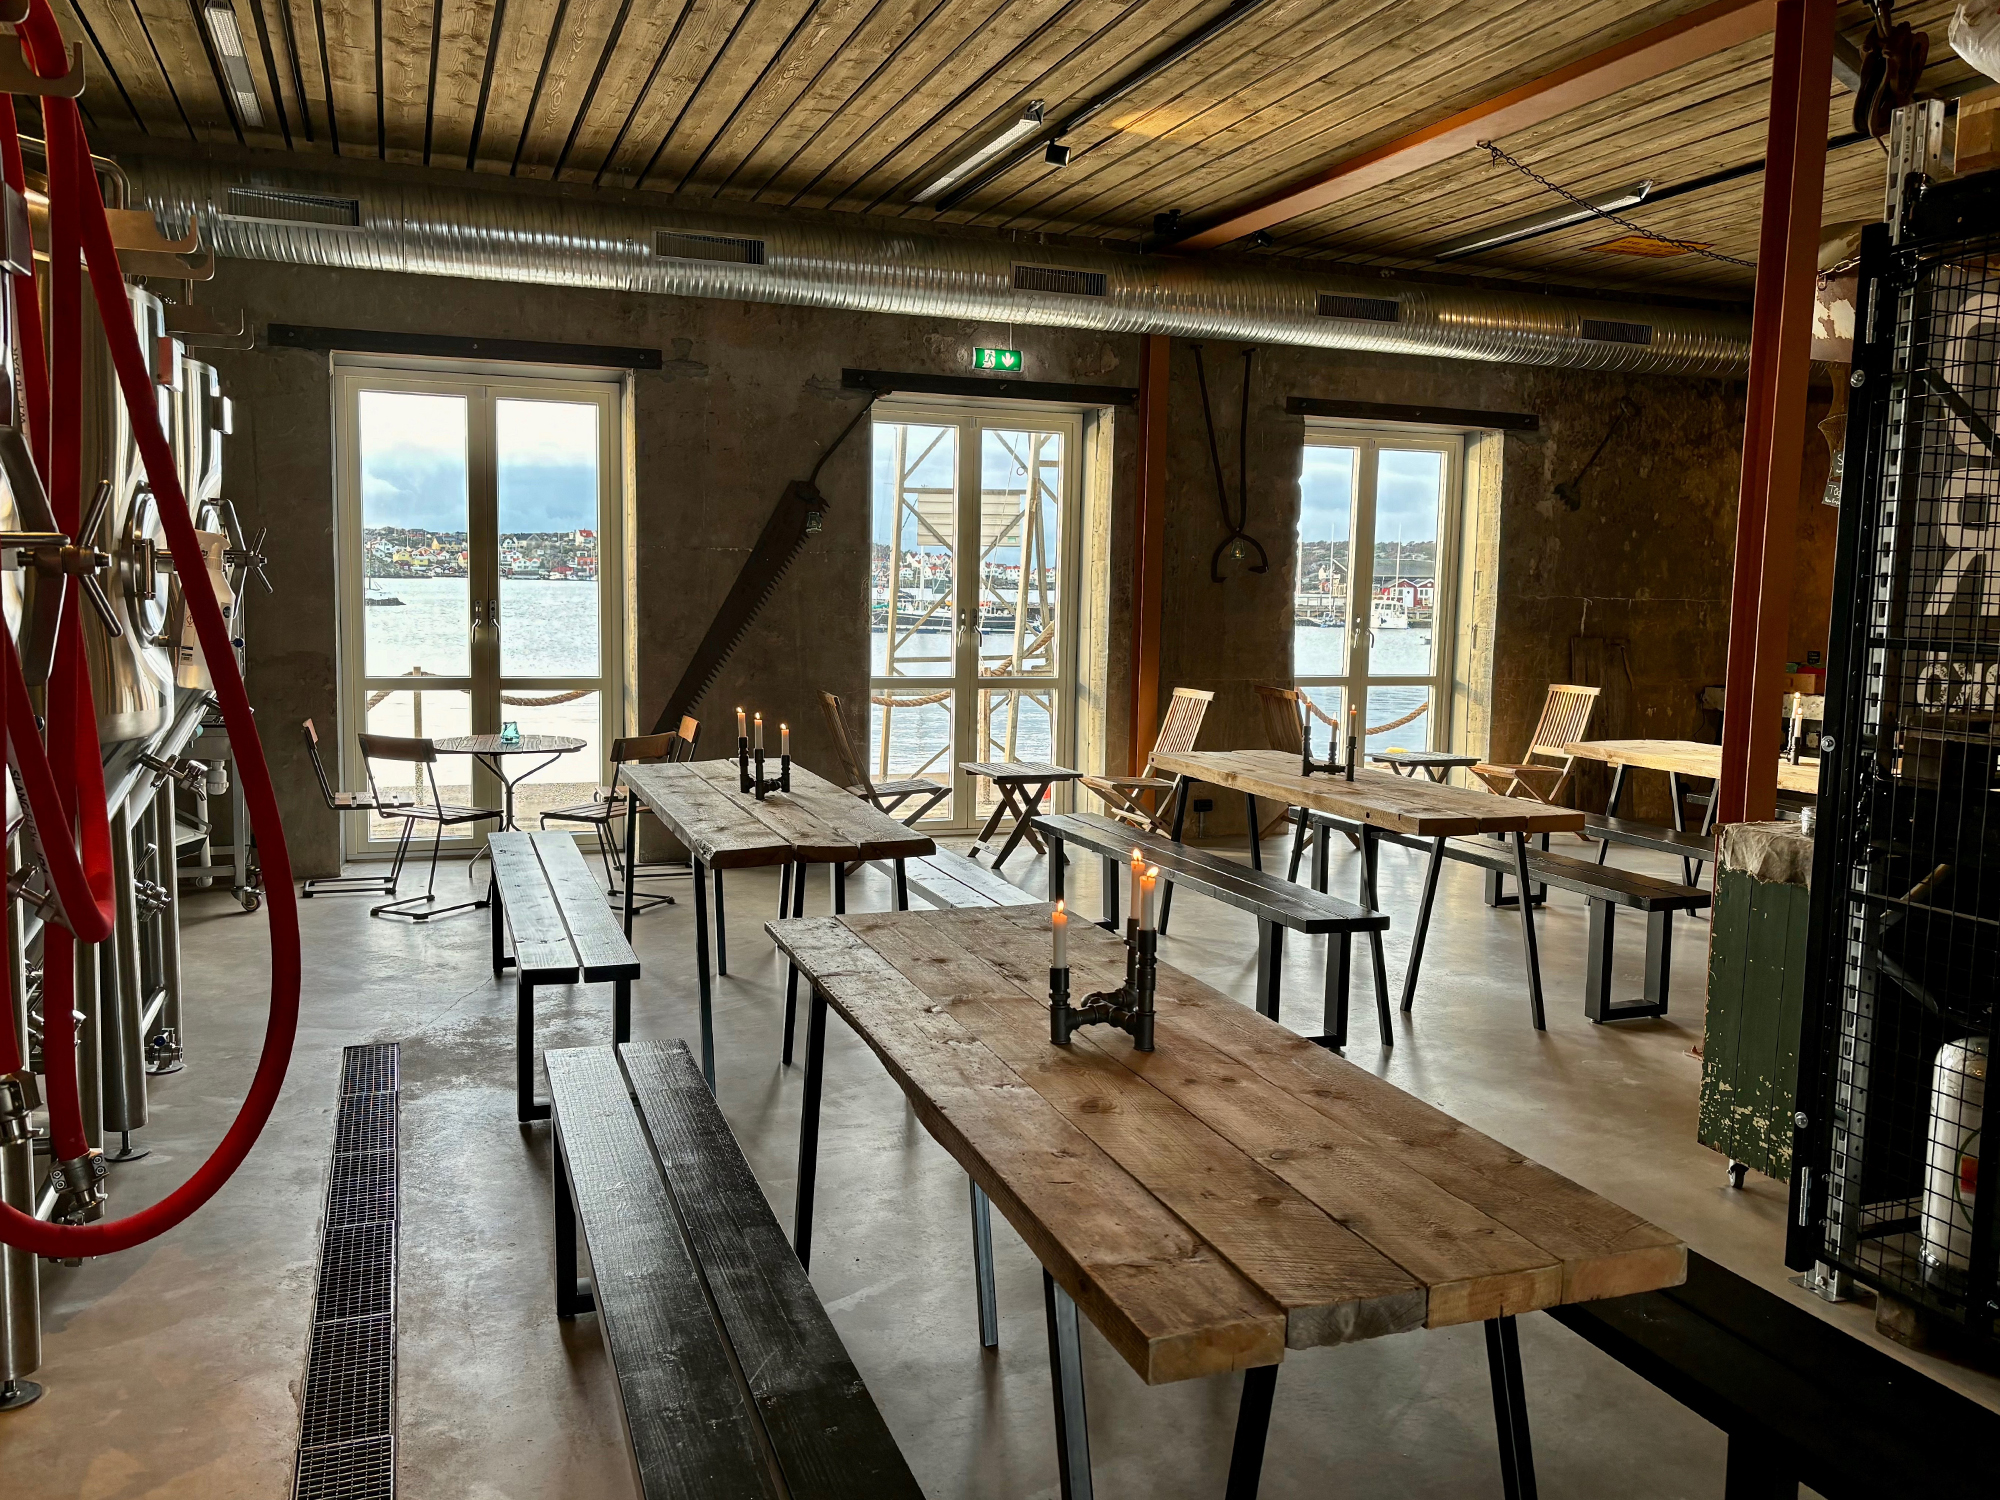 Interiör på bryggeriet Barlind Beer på Björkö i Göteborg.